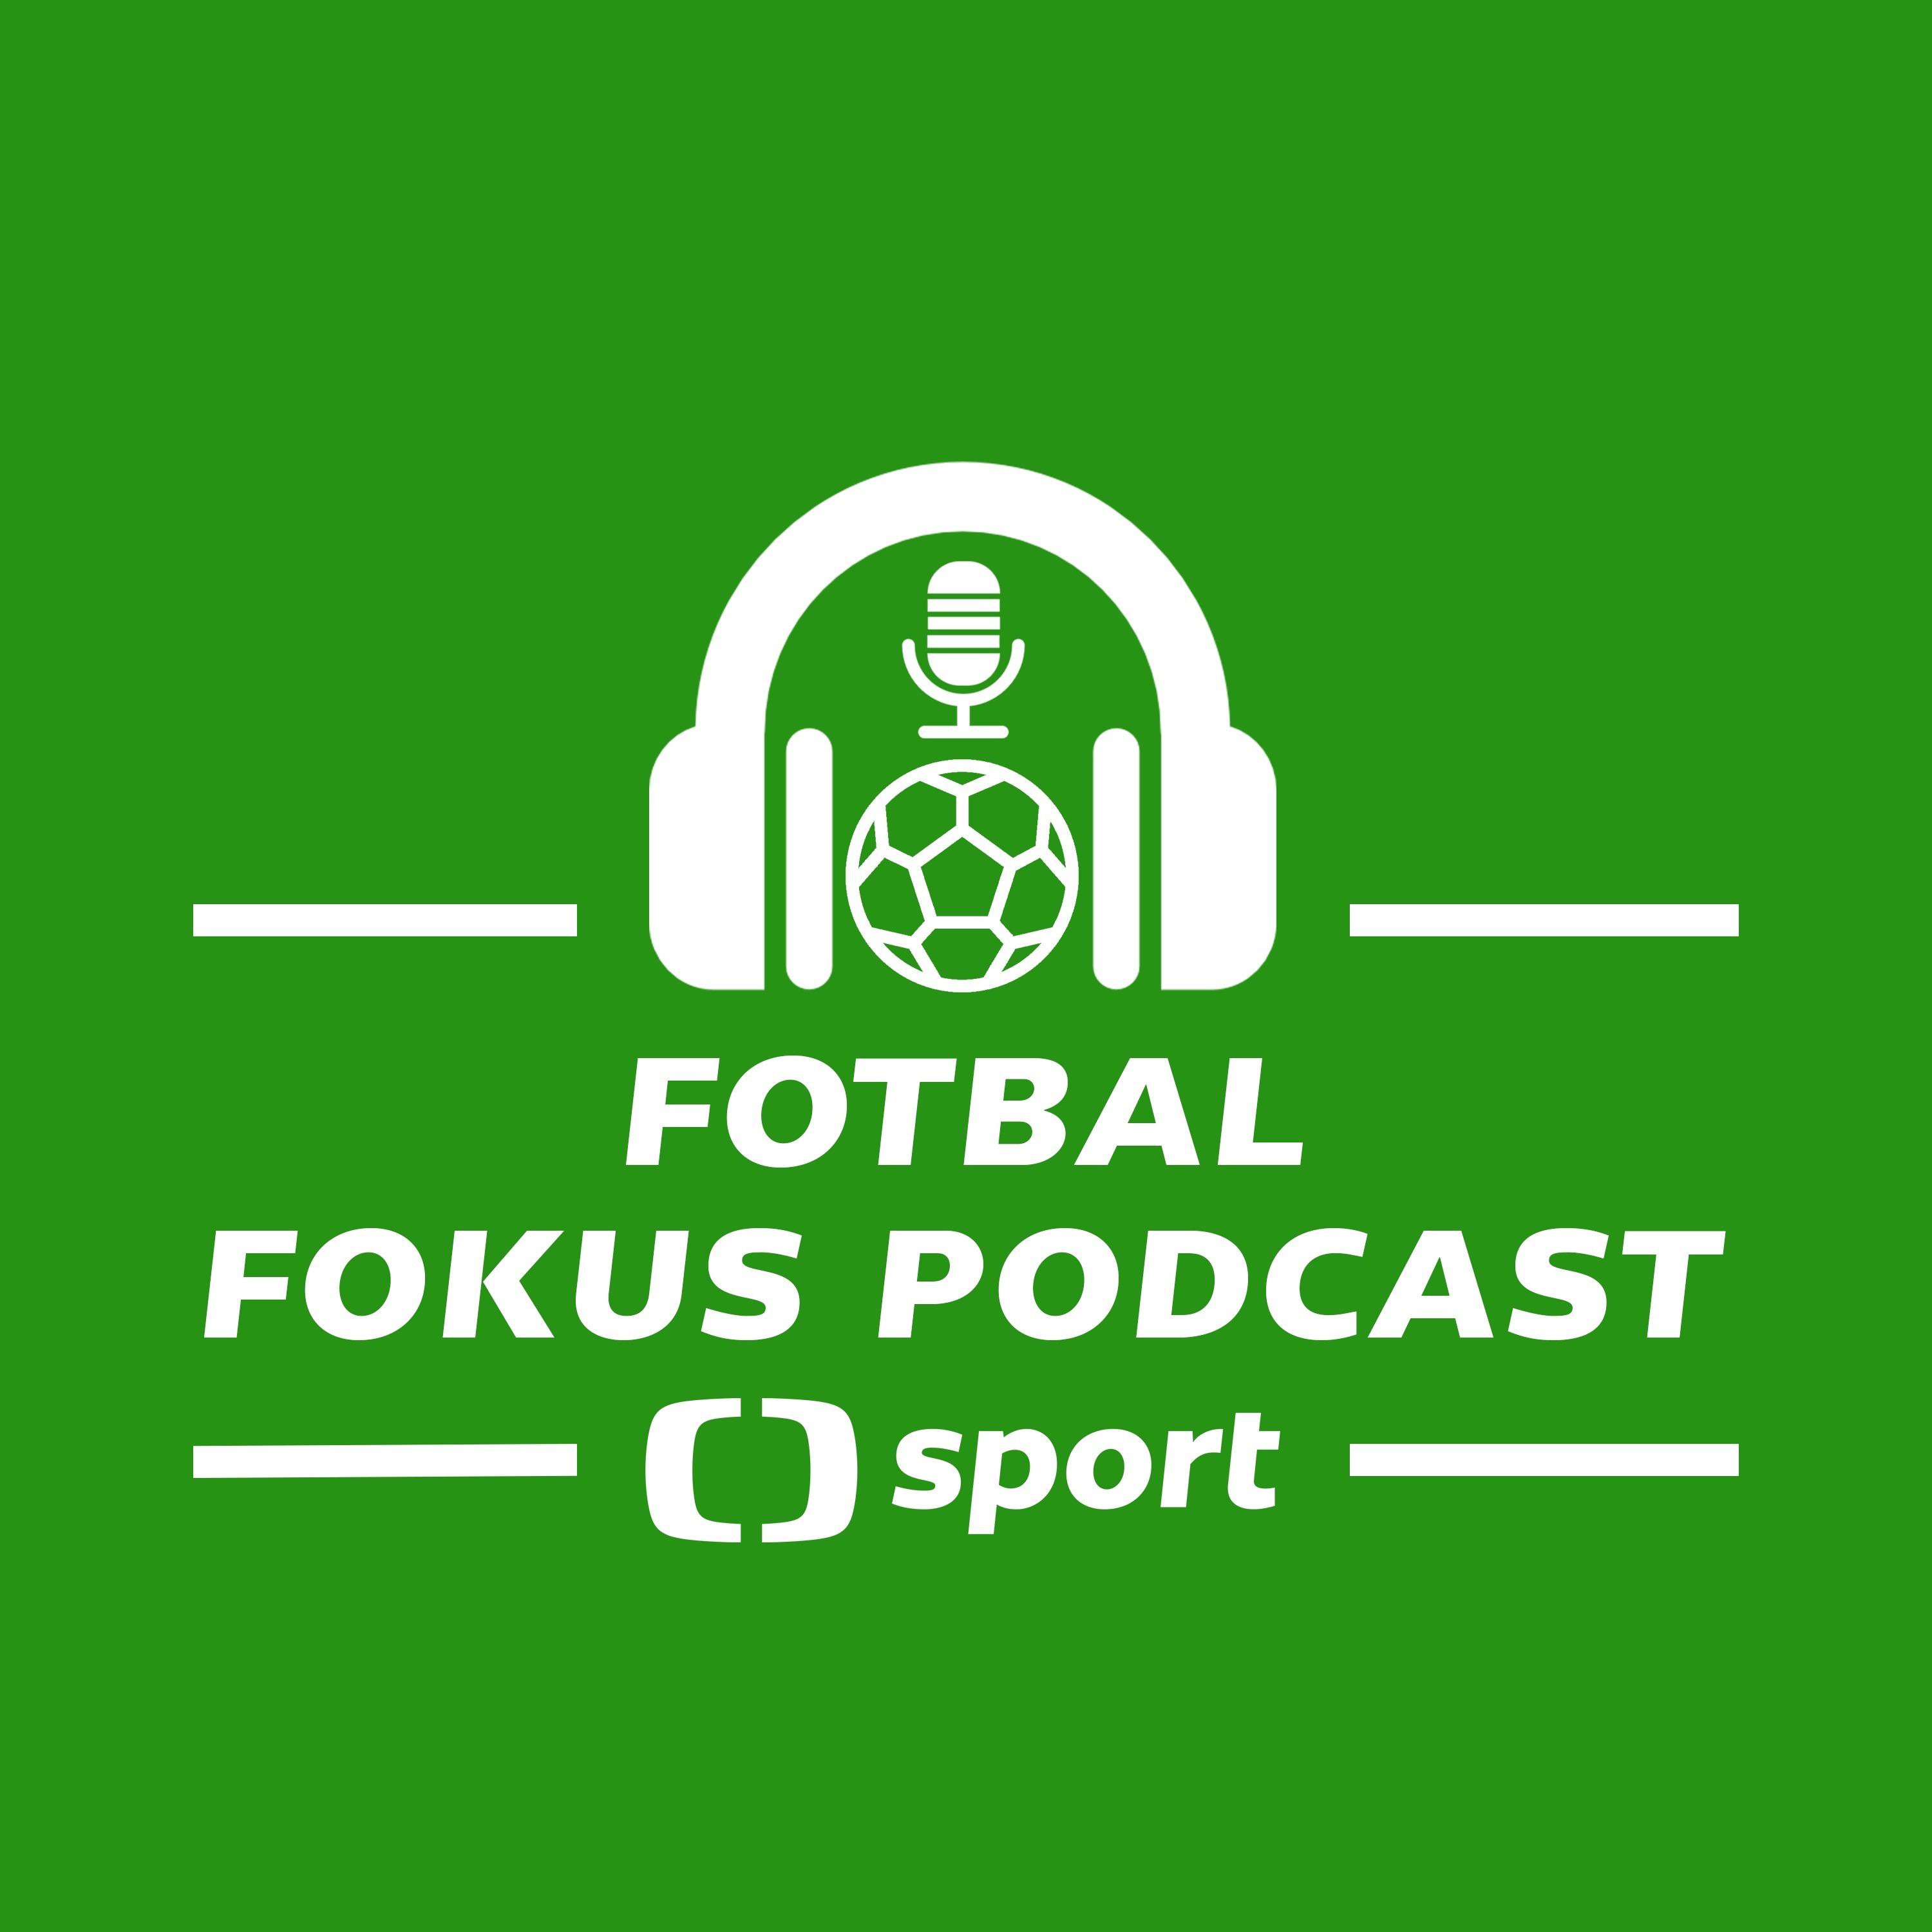 Fotbal fokus podcast: Má Slavia sílu postoupit i přes Chelsea a uspěje reprezentace v Anglii?